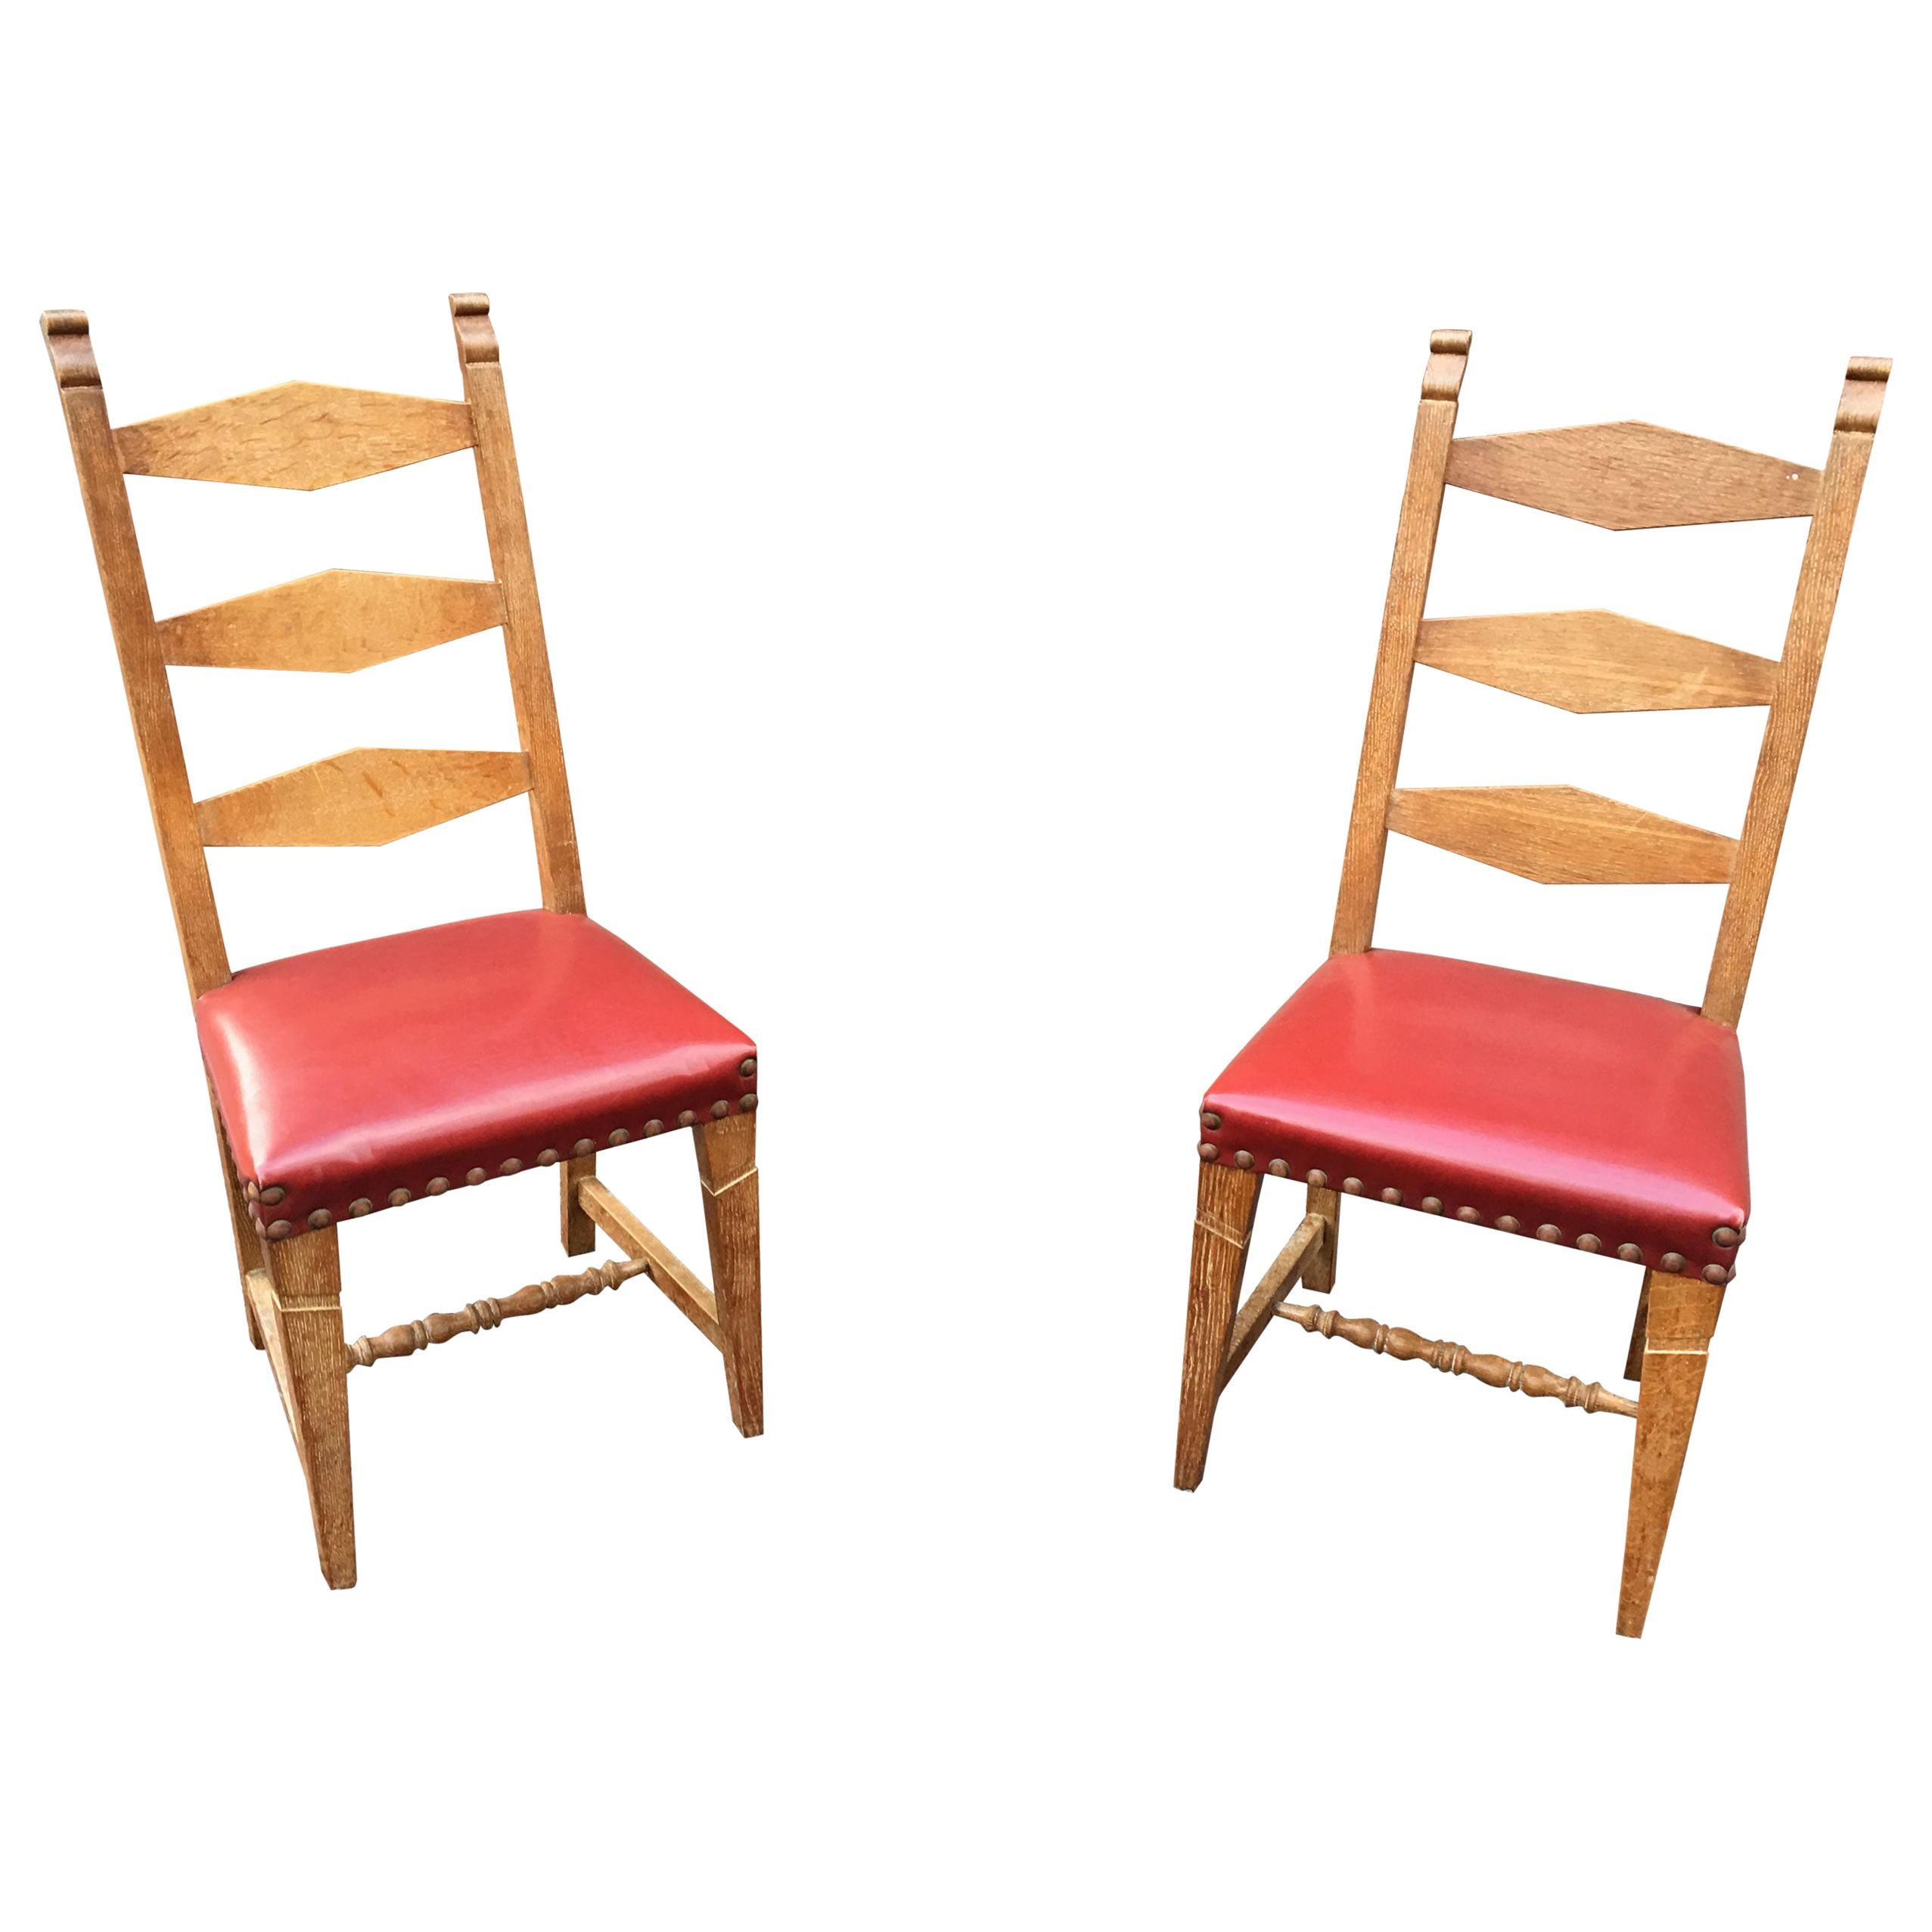 Suite de 4 chaises en chêne, revêtement en faux cuir, datant d'environ 1950